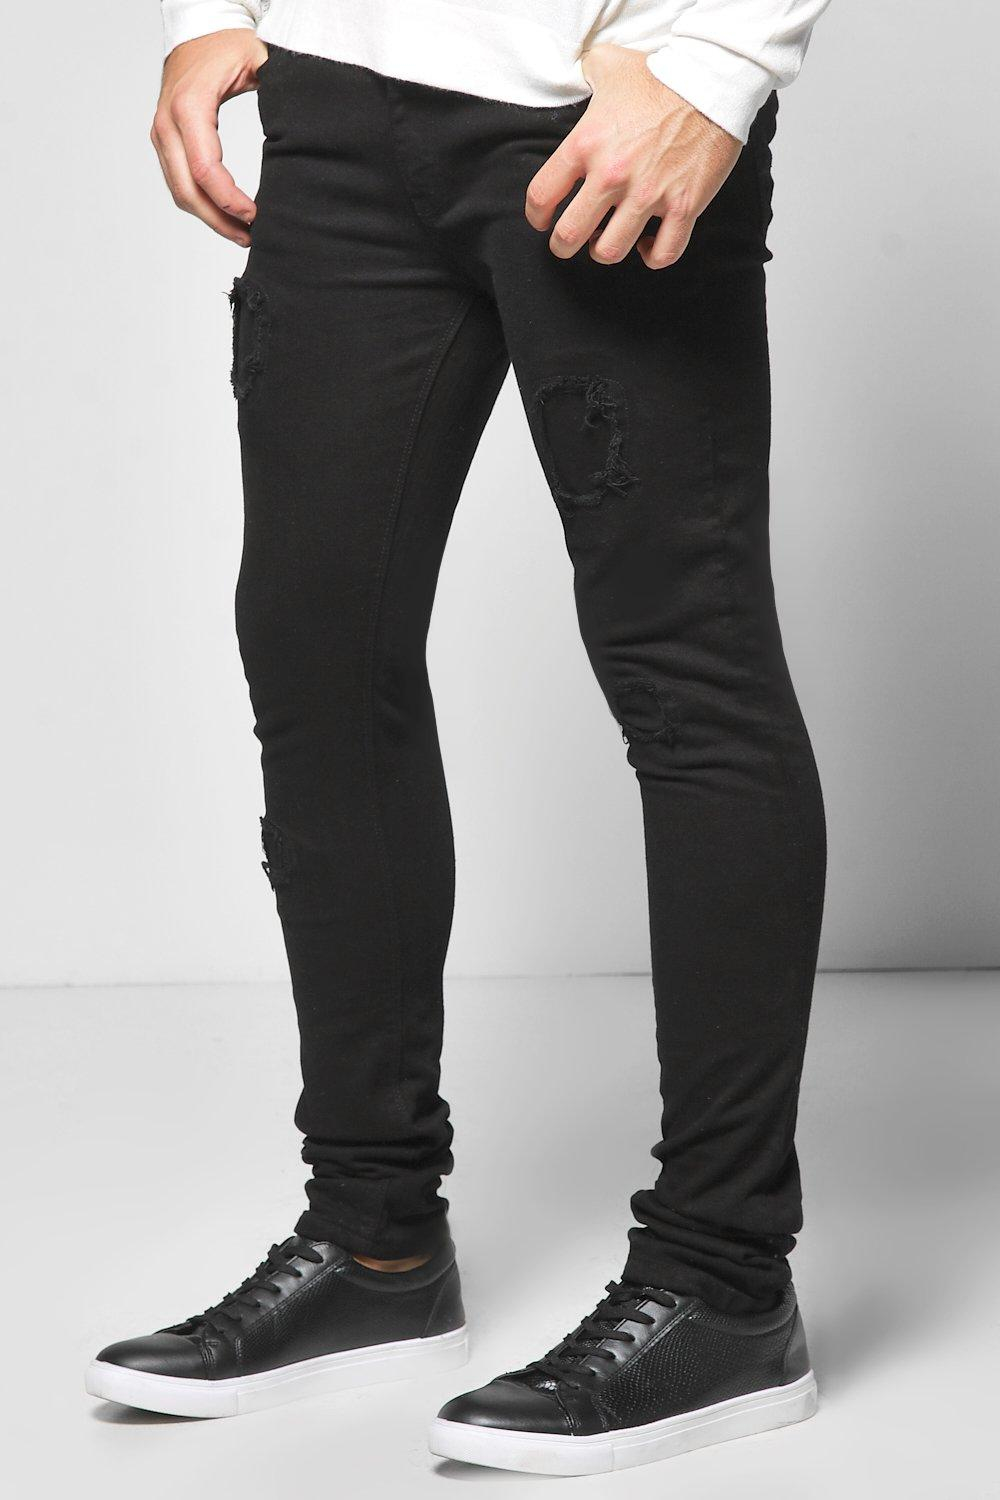 Lyst - Boohoo Super Skinny Rip & Repair Jeans in Black for Men